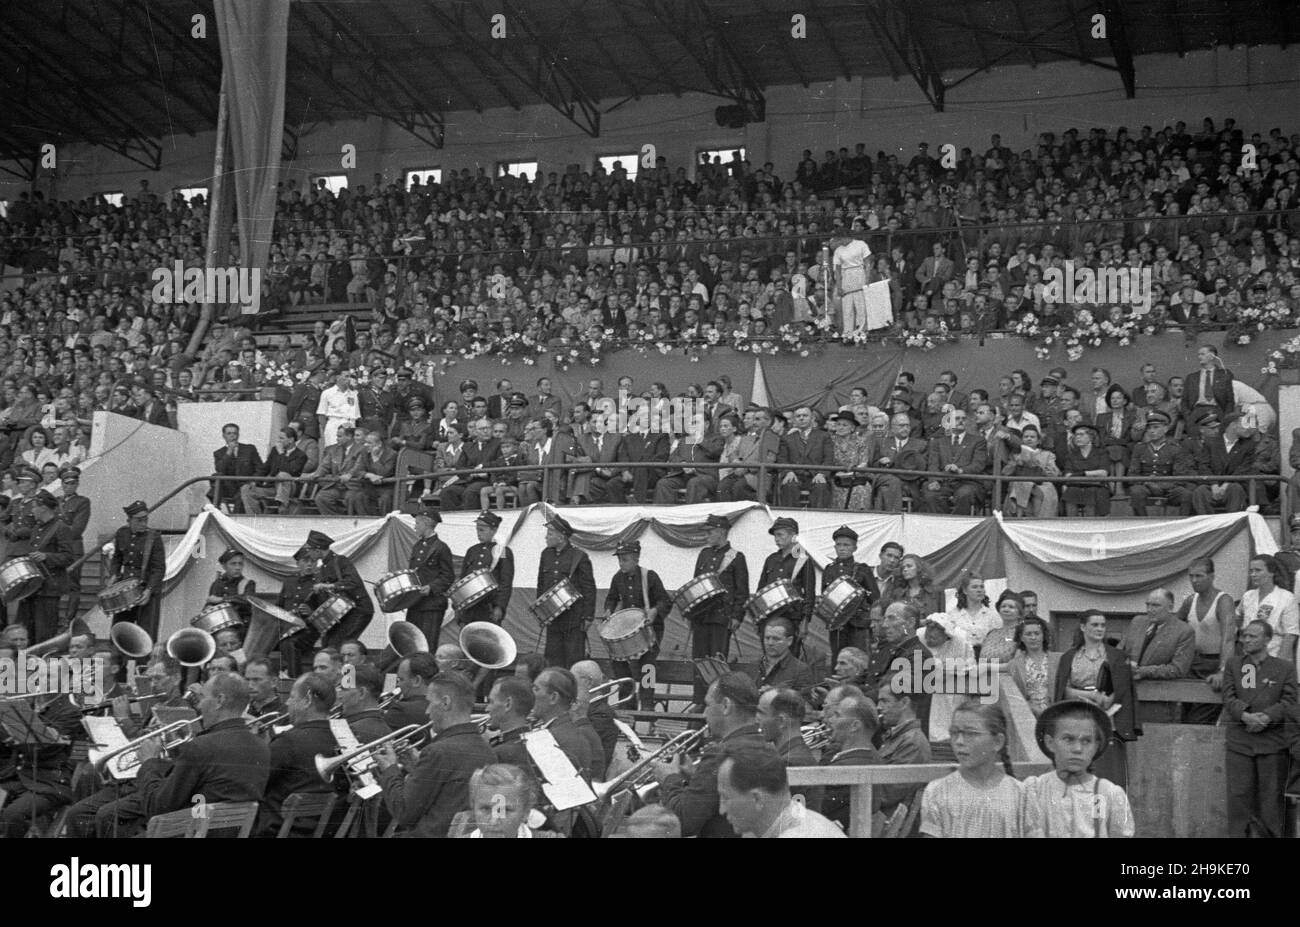 Warszawa, 1948-08-19. Pierwsze ogólnopolskie Igrzyska Sportowe Zwi¹zków Zawodowych (19-22.VIII) na stadionie Wojskowego Klubu Sportowego Legia, w których rywalizowali w 11 dyscyplinach reprezentanci 17 zwi¹zków zawodowych. Nz. uroczysta inauguracja zawodów.  ka  PAP      Warsaw, Aug. 19, 1948. The first national Trade Union Sports Competition (Aug. 19-22) held at the stadium of the Military Sports Club Legia. The event brought together representatives of 17 trade unions who competed in 11 disciplines. Pictured: the competition inauguration ceremony.  ka  PAP Stock Photo